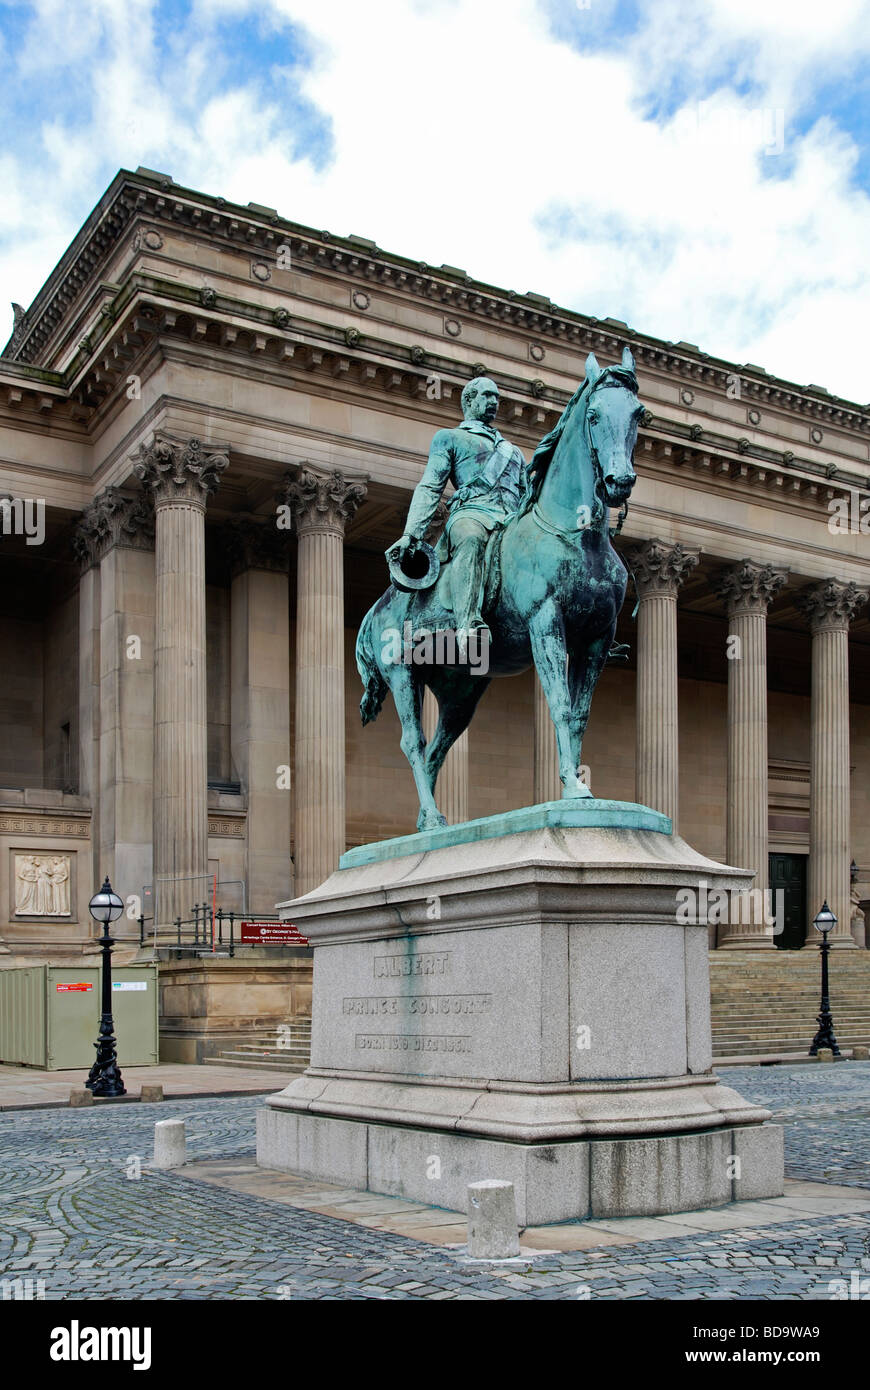 La statua del Principe Alberto al di fuori di st.georges hall di liverpool, Regno Unito Foto Stock